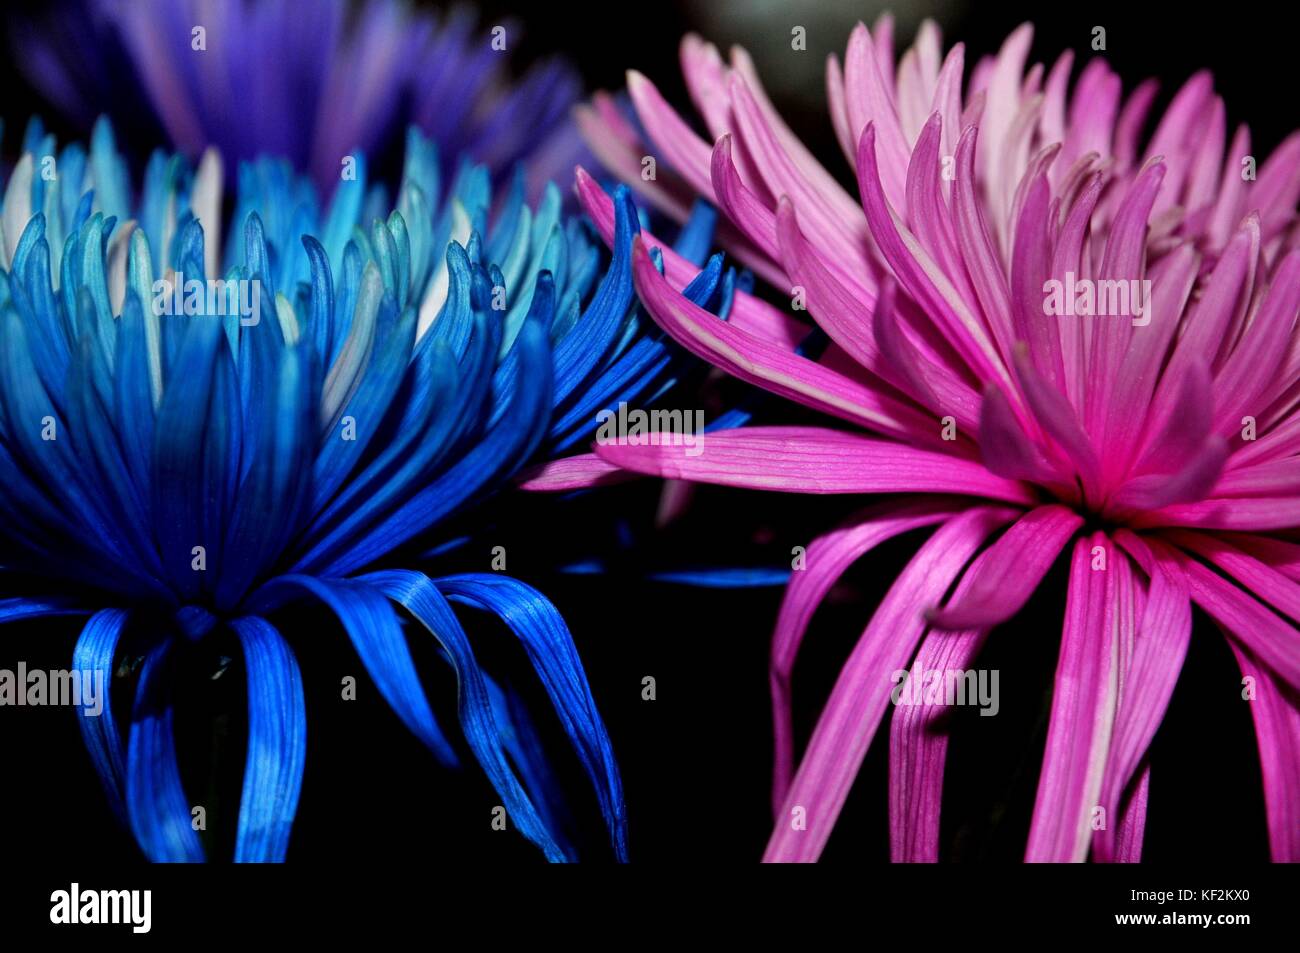 „sei sanft und bleib zusammen“ die blauen und rosa Blüten werden zusammen gehalten, um ein inspirierendes Bild zu schaffen. Stockfoto